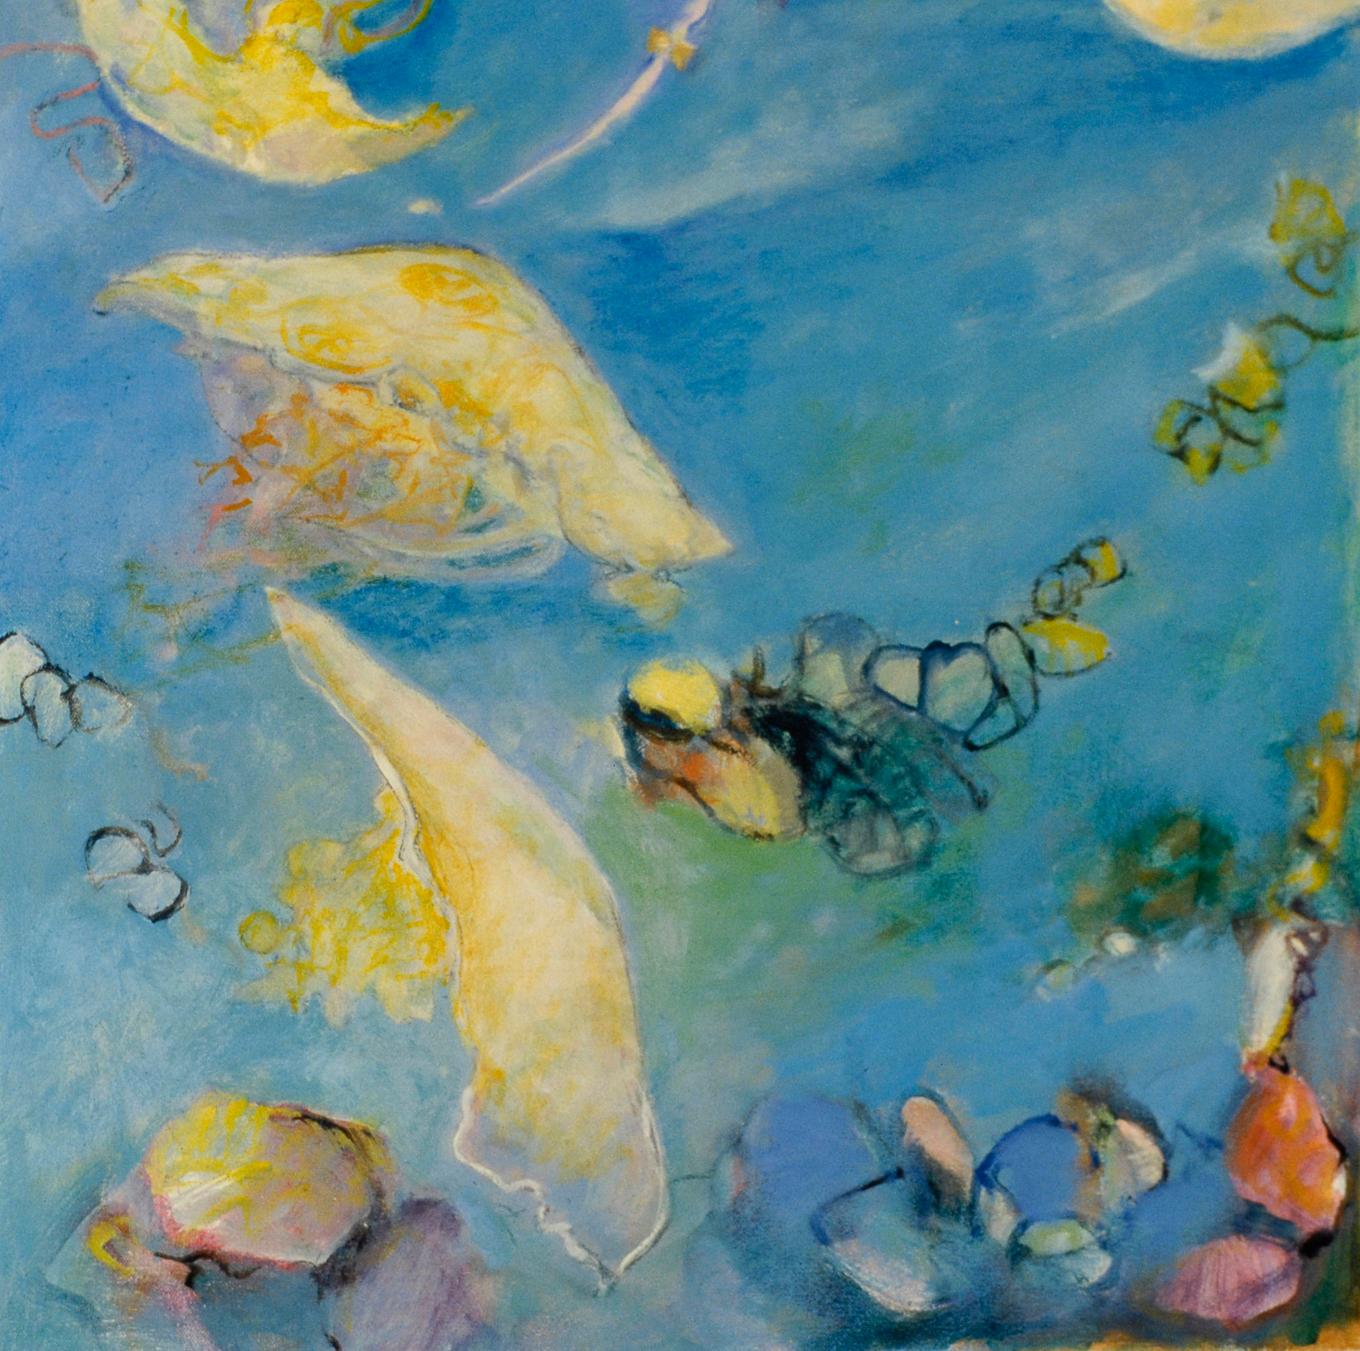 Sea Lantern fait partie de la série Light in the Deep de l'artiste Ellen Hart. La lanterne de mer enquête  les motifs omniprésents de lumière, d'ombre et de réflexion dont nous faisons tous l'expérience quotidiennement, mais que nous prenons